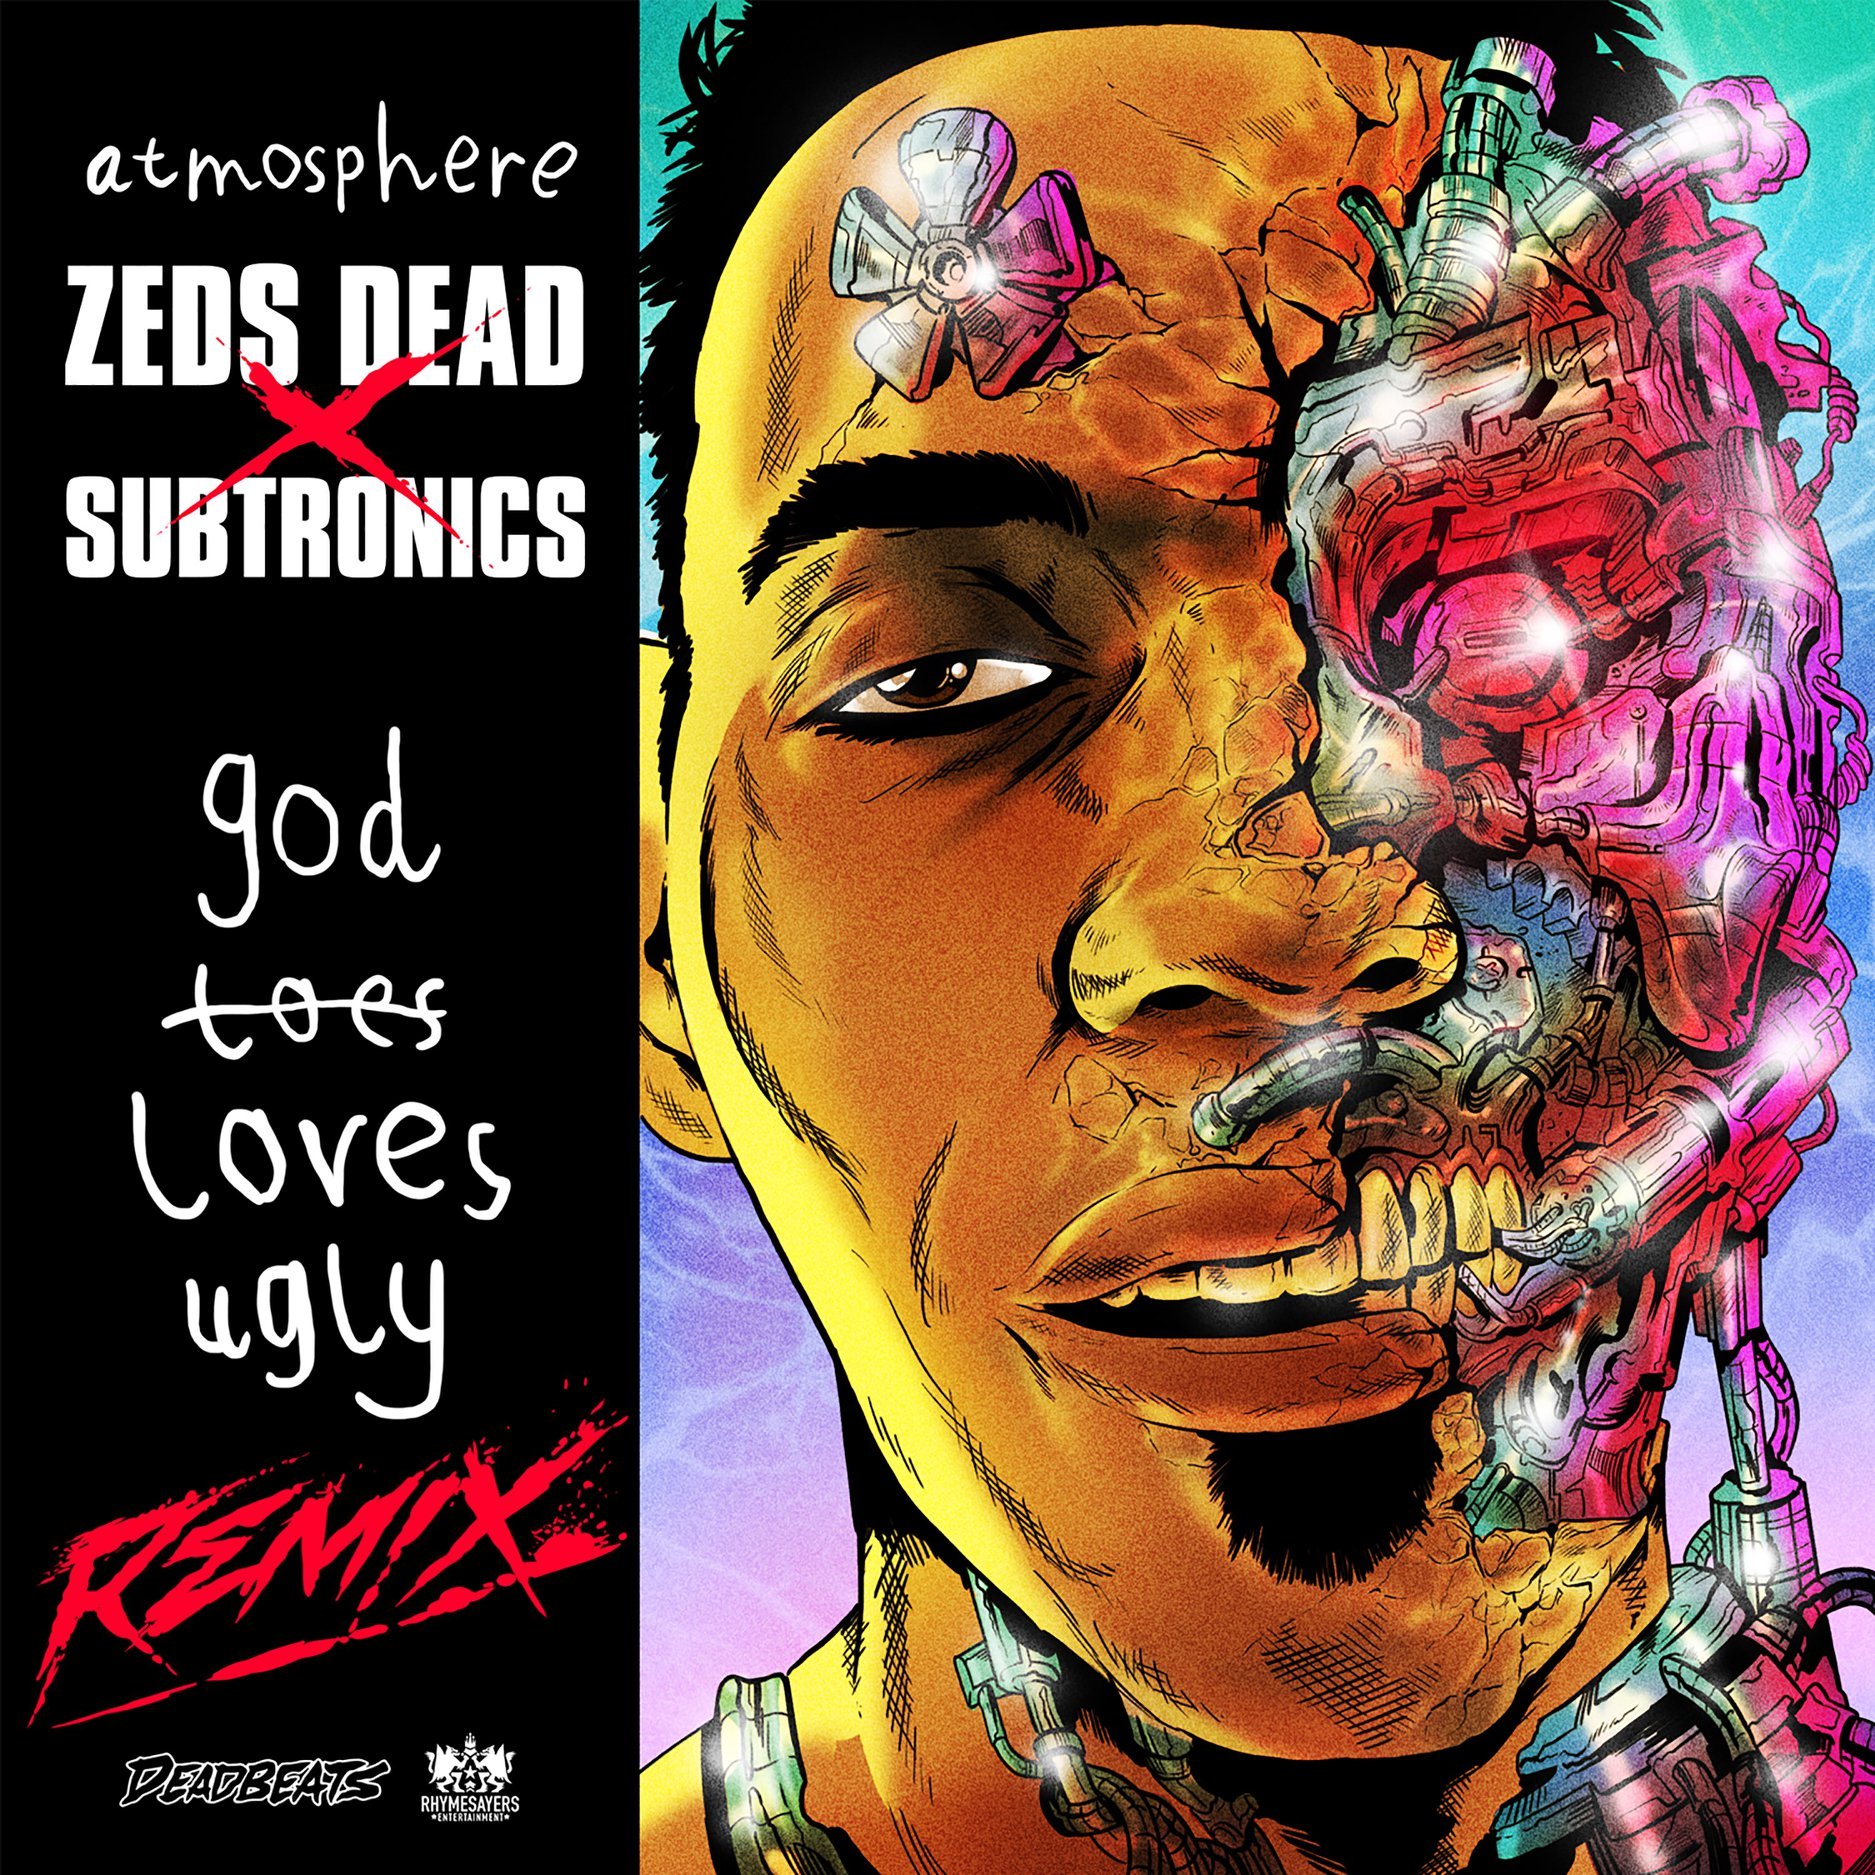 Zeds Dead x Subtronics “GodLovesUgly” Remix Out Tomorrow via Deadbeats